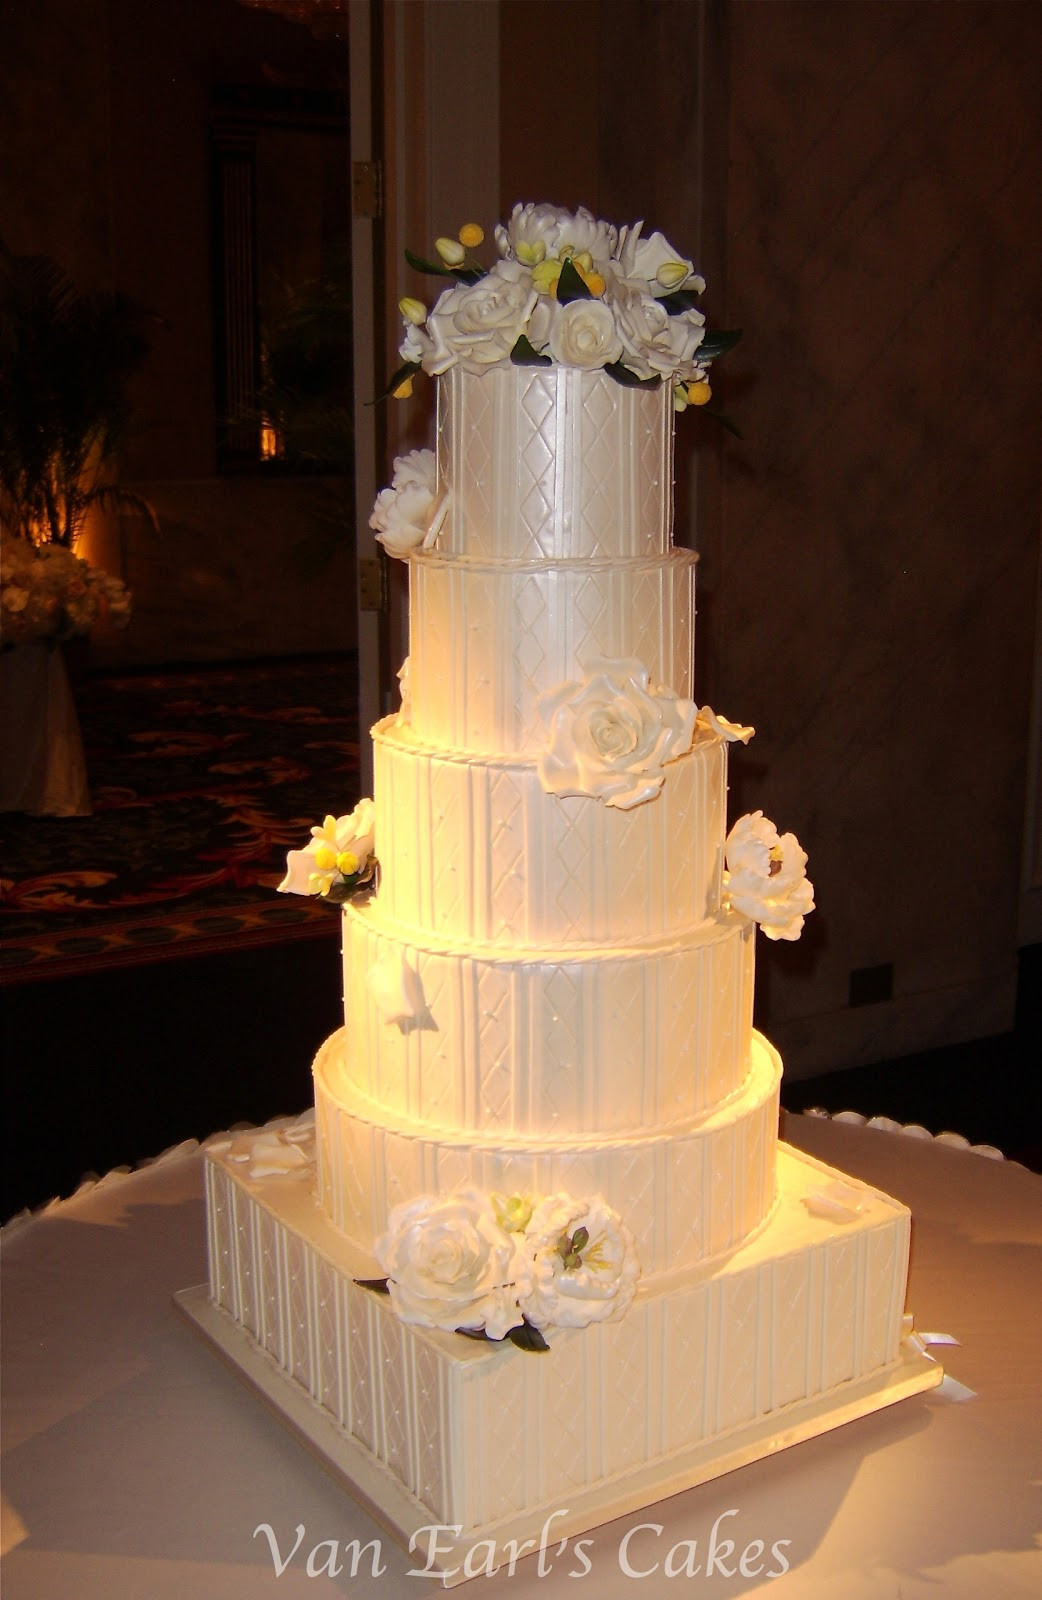 6 Tier Wedding Cakes
 Van Earl s Cakes 6 tier Ivory Textured Wedding Cake